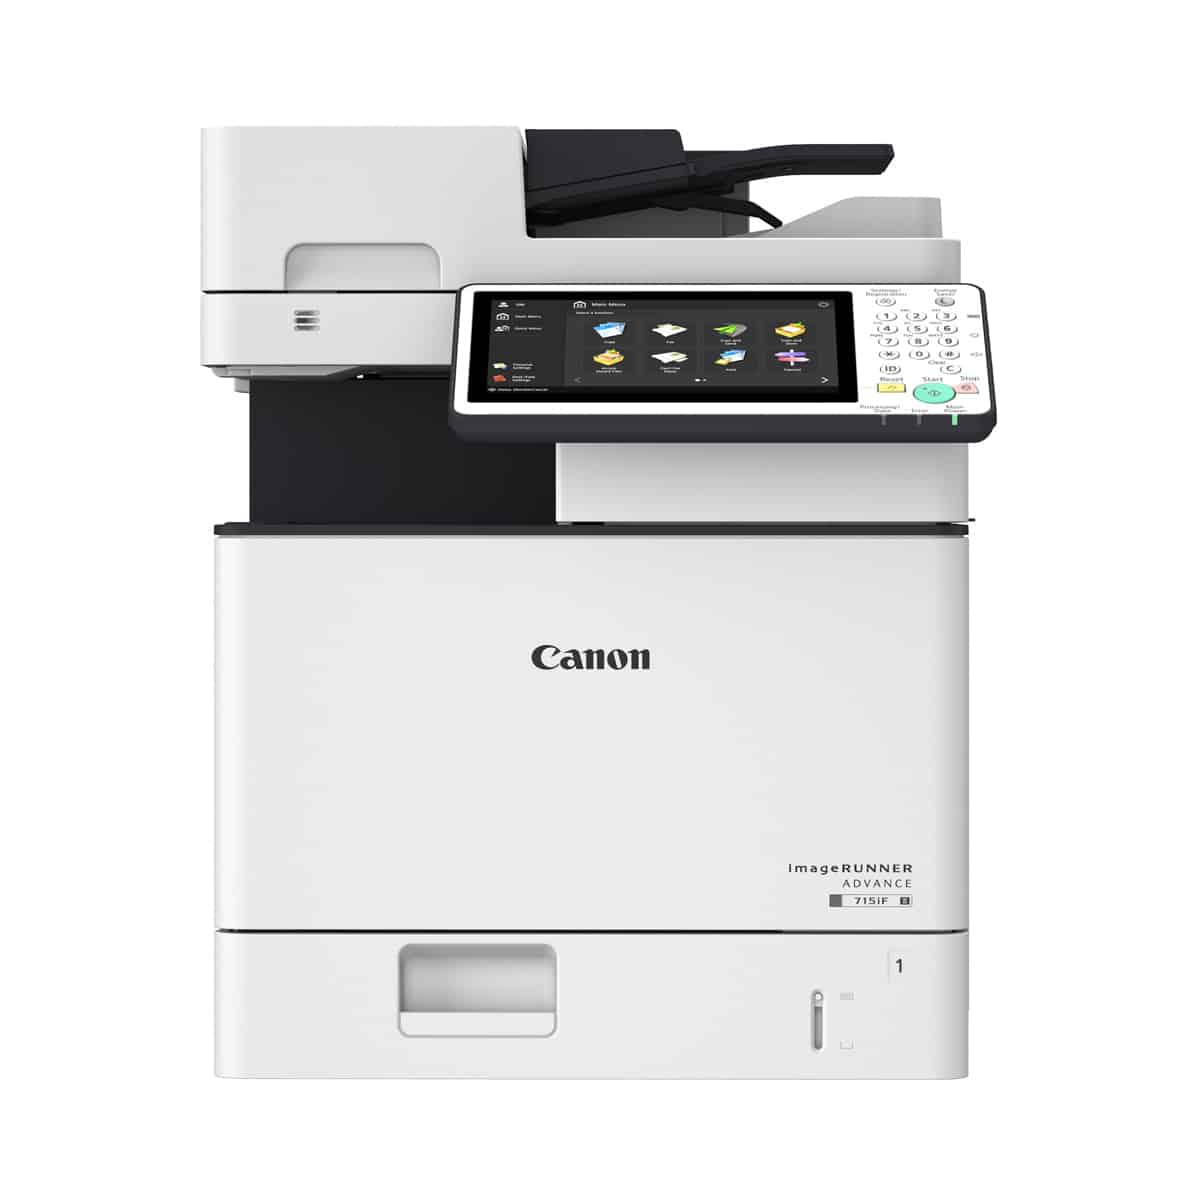 Náplně do tiskárny Canon imageRUNNER Advance 525